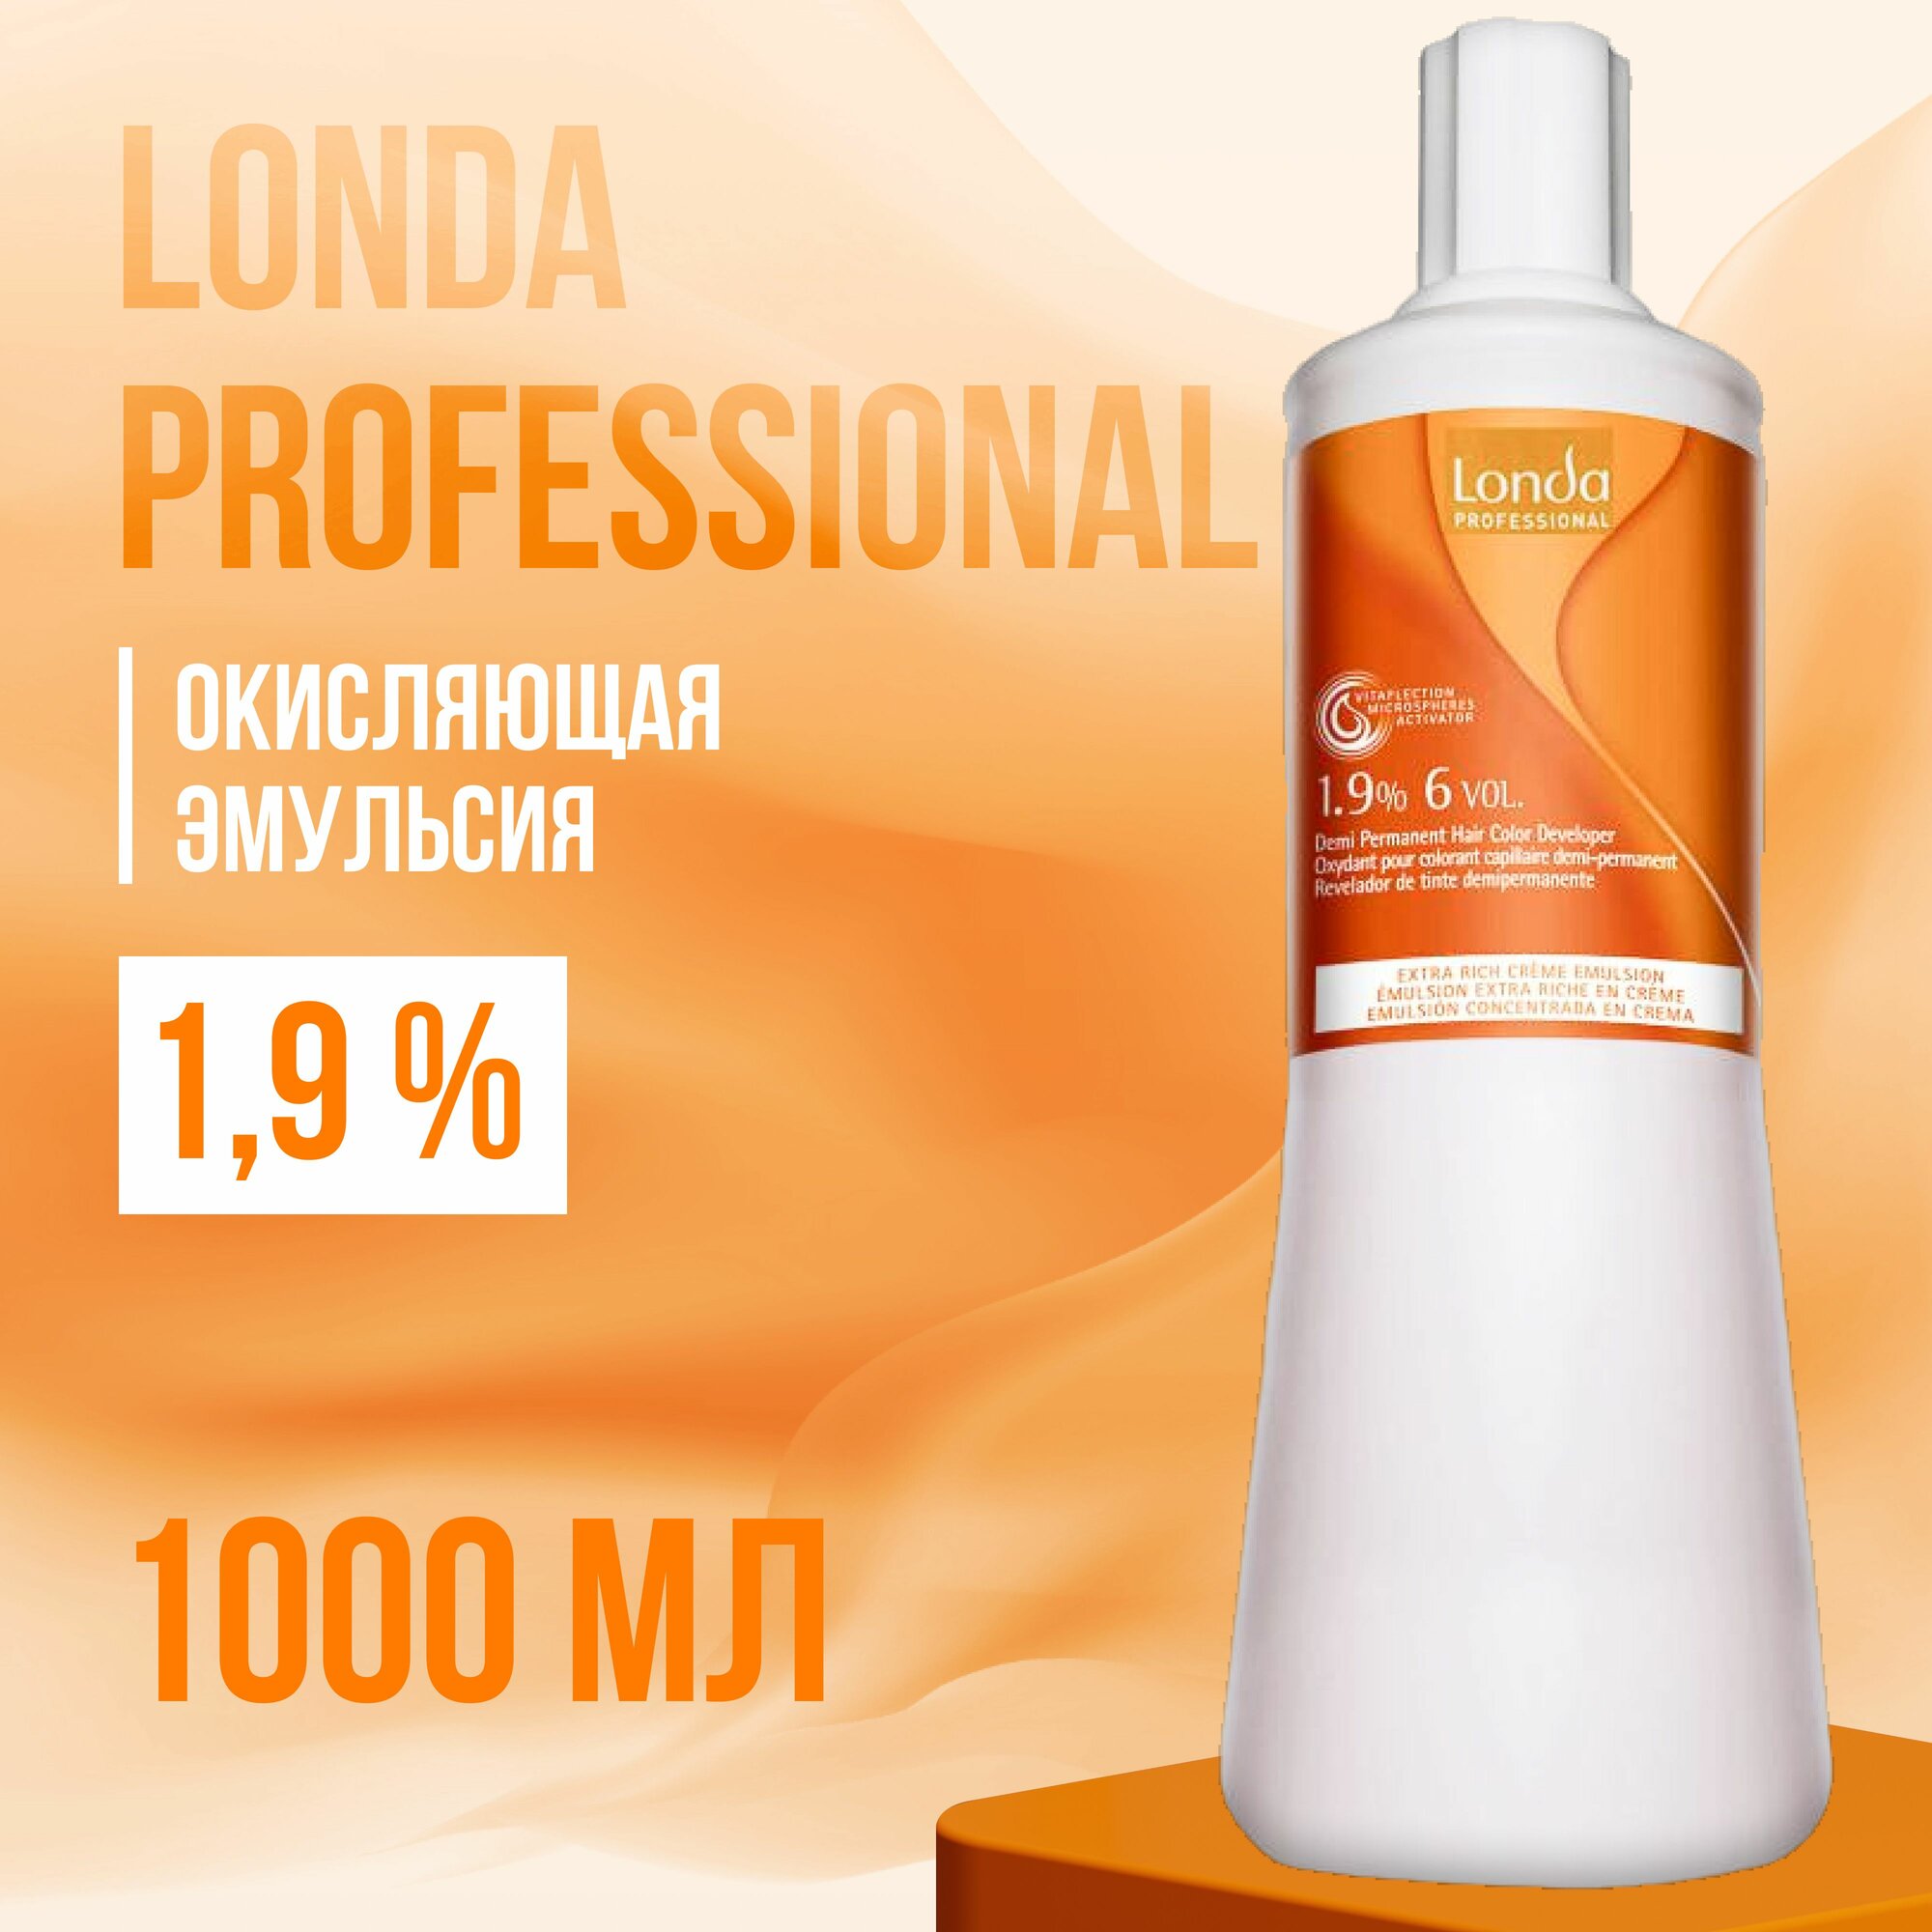 Londa Professional окислительная эмульсия LONDACOLOR 1,9%, 1000 мл